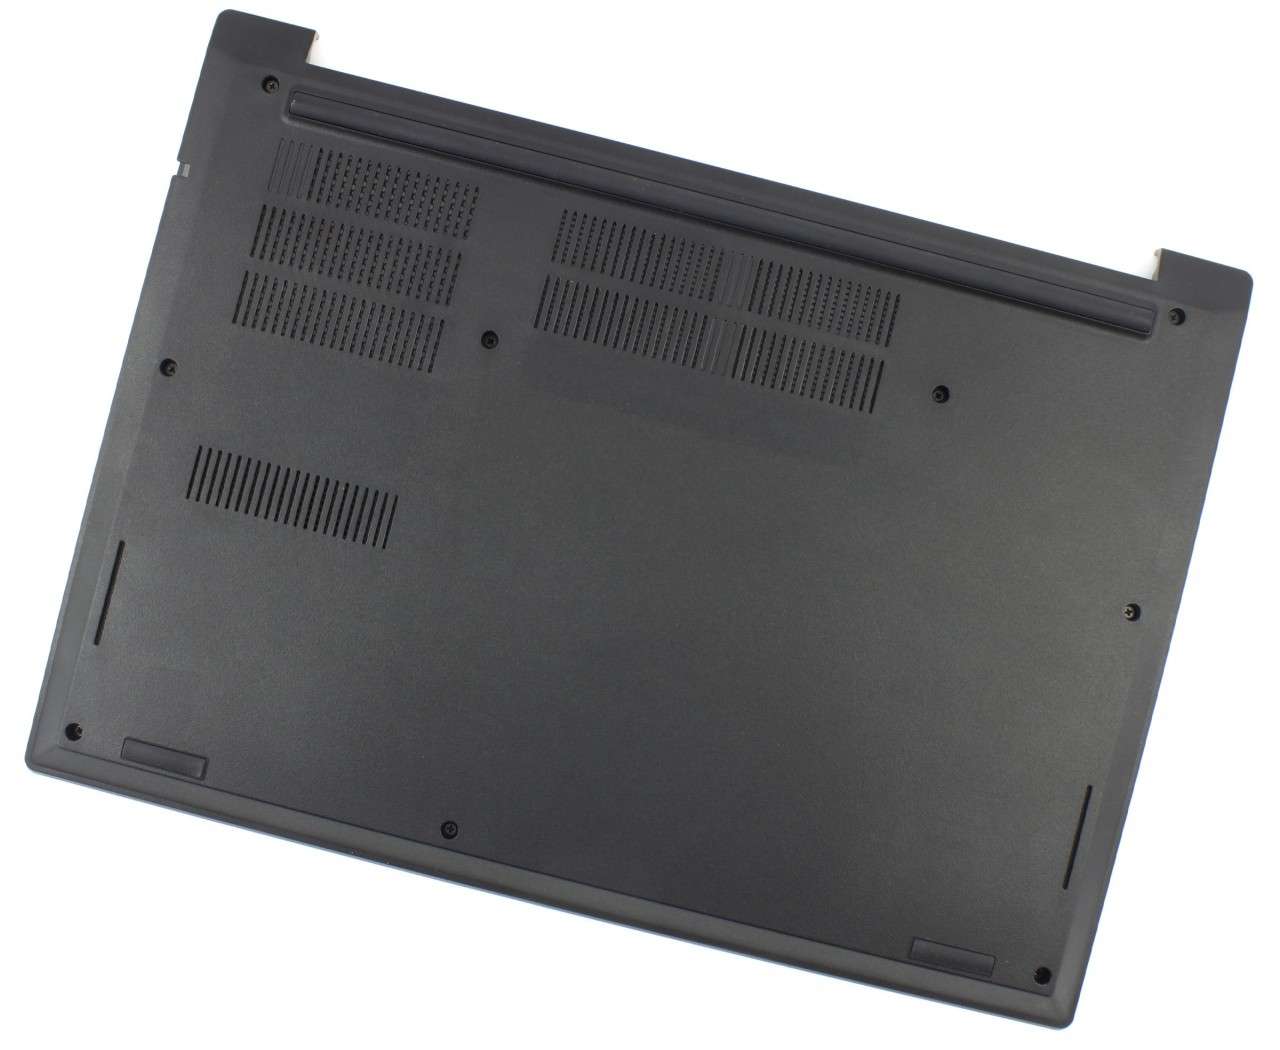 Bottom Case Lenovo ThinkPad E480 Carcasa Inferioara Negra